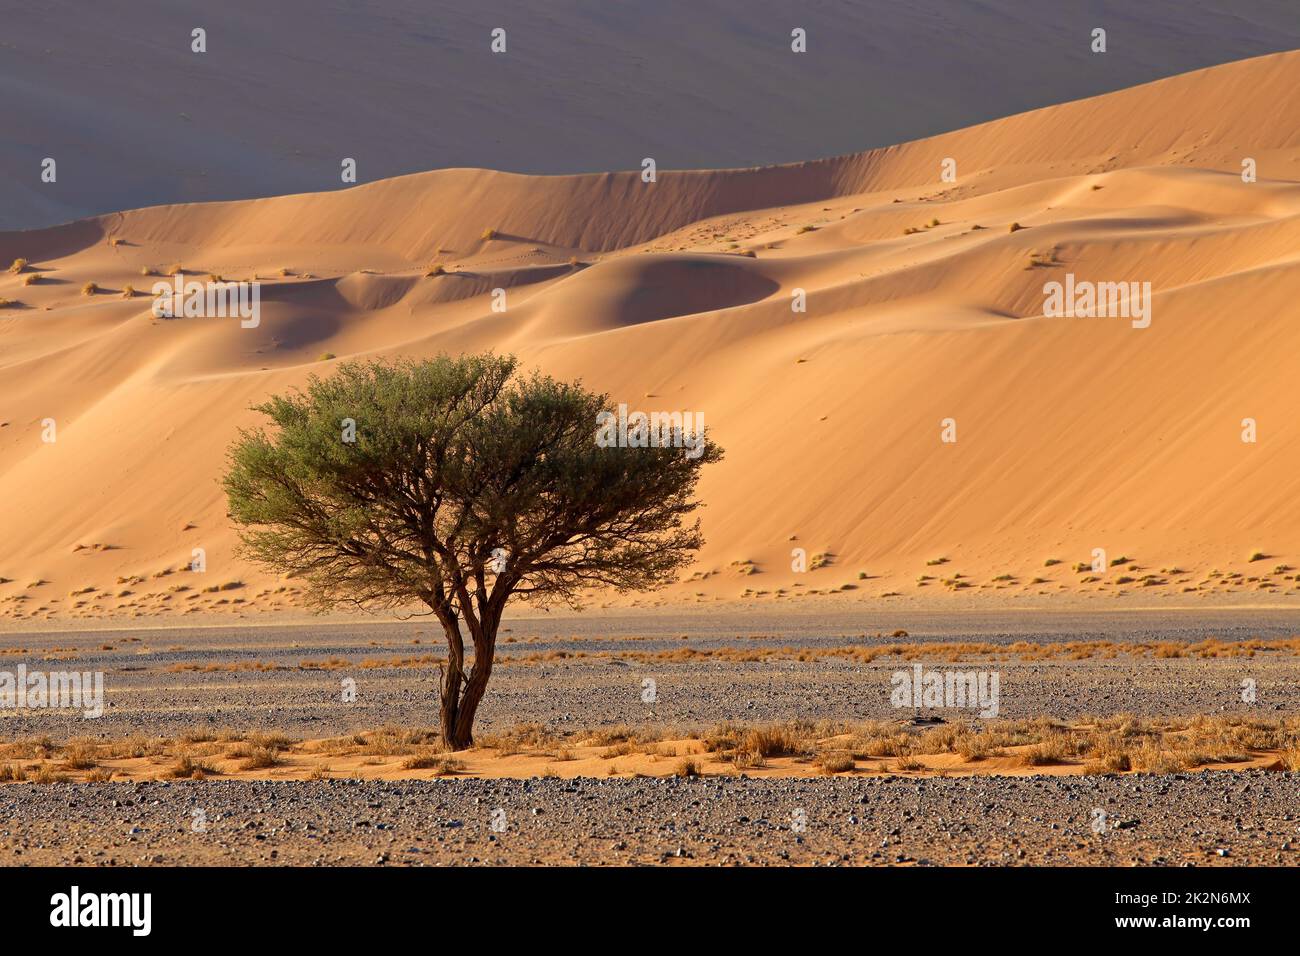 Paysage désertique avec arbre - Namibie Banque D'Images